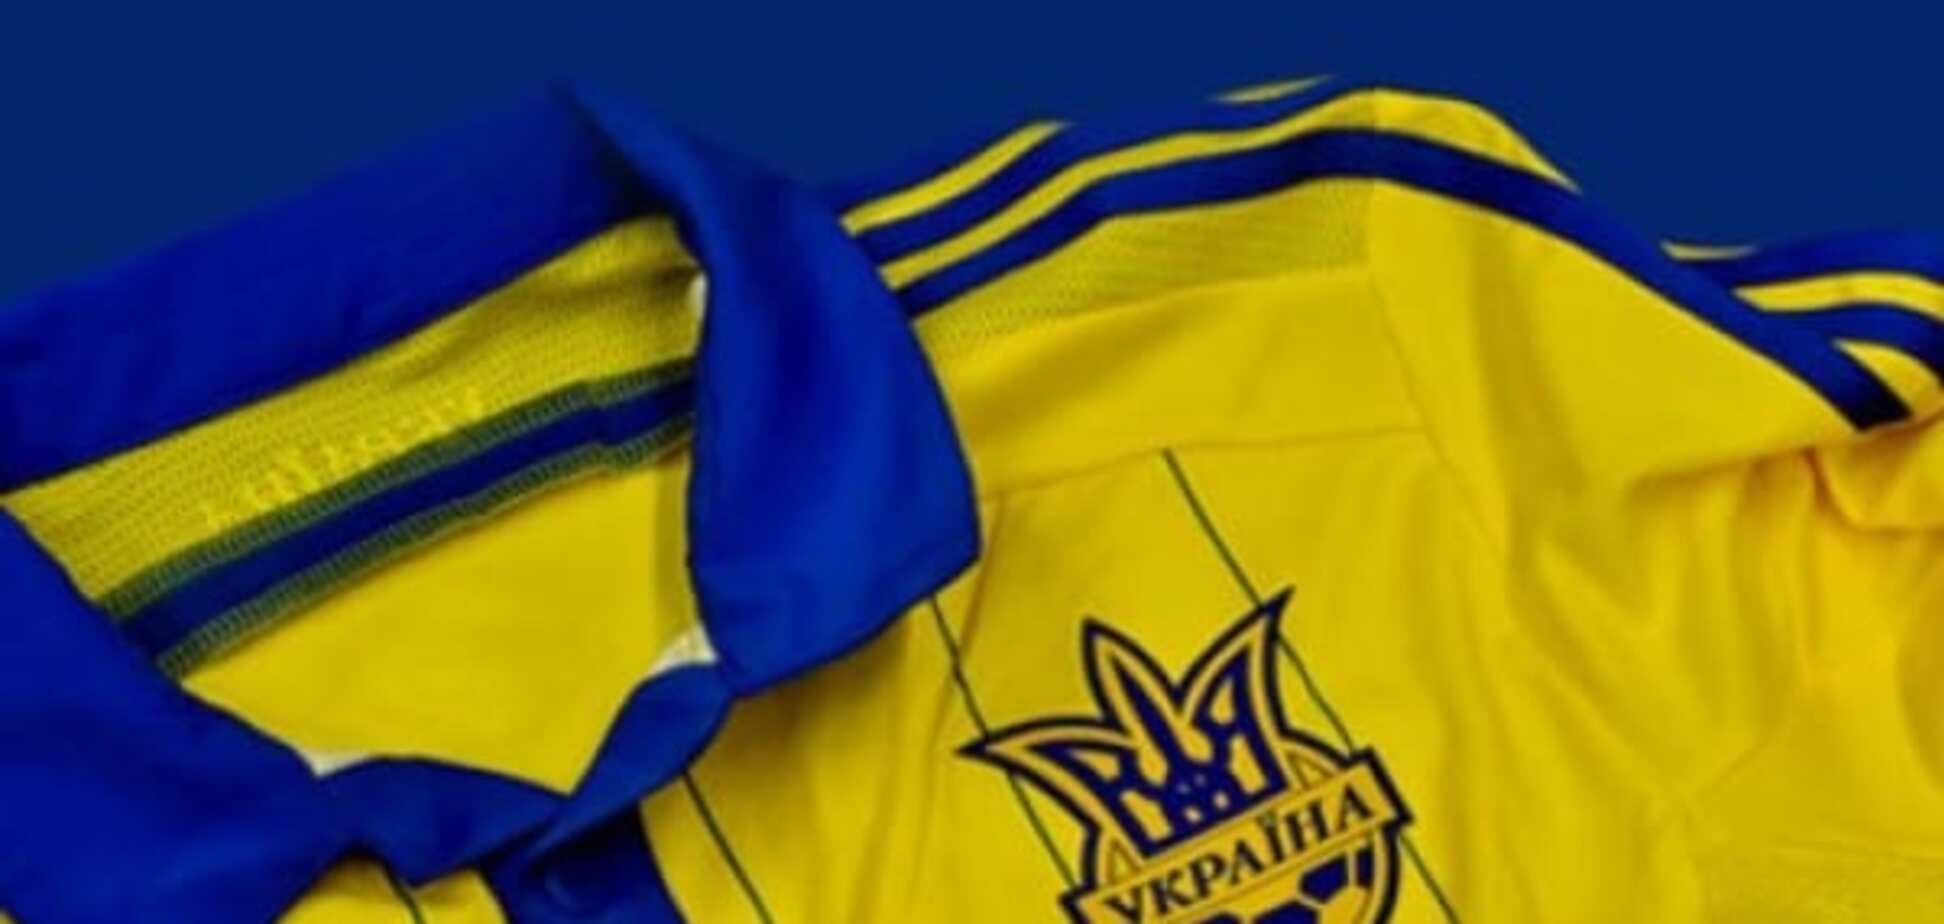 Українських футболістів, які виступають в Росії, не будуть більше викликати в збірну України - ЗМІ